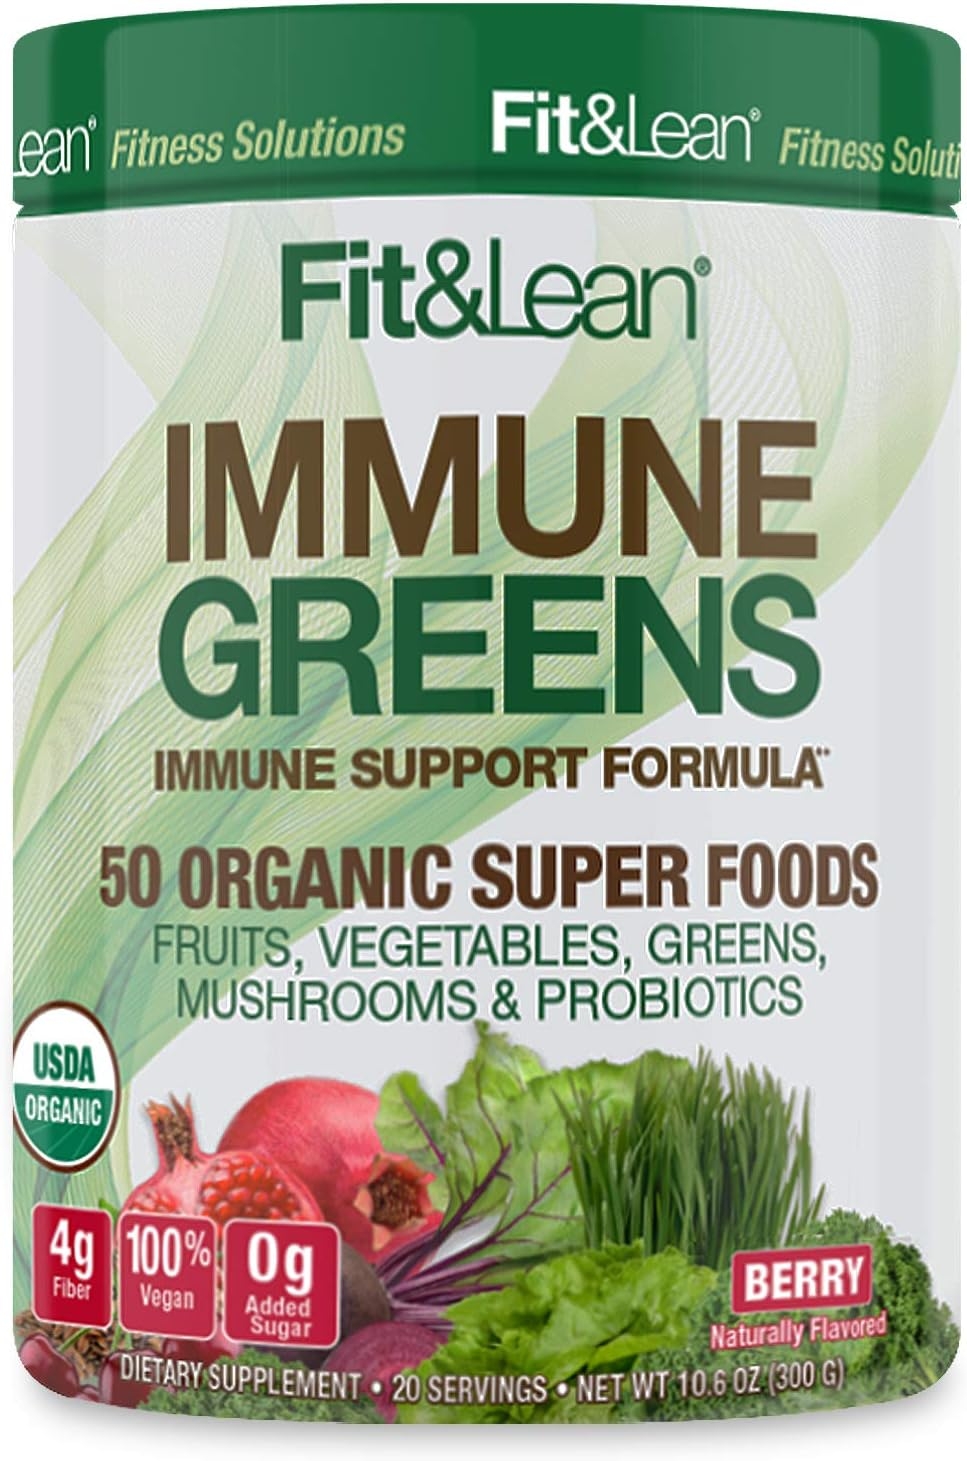 Fit & Lean Immune Greens Powder, Organic, Super Food, Non-gmo, Natural, Vegan Shake